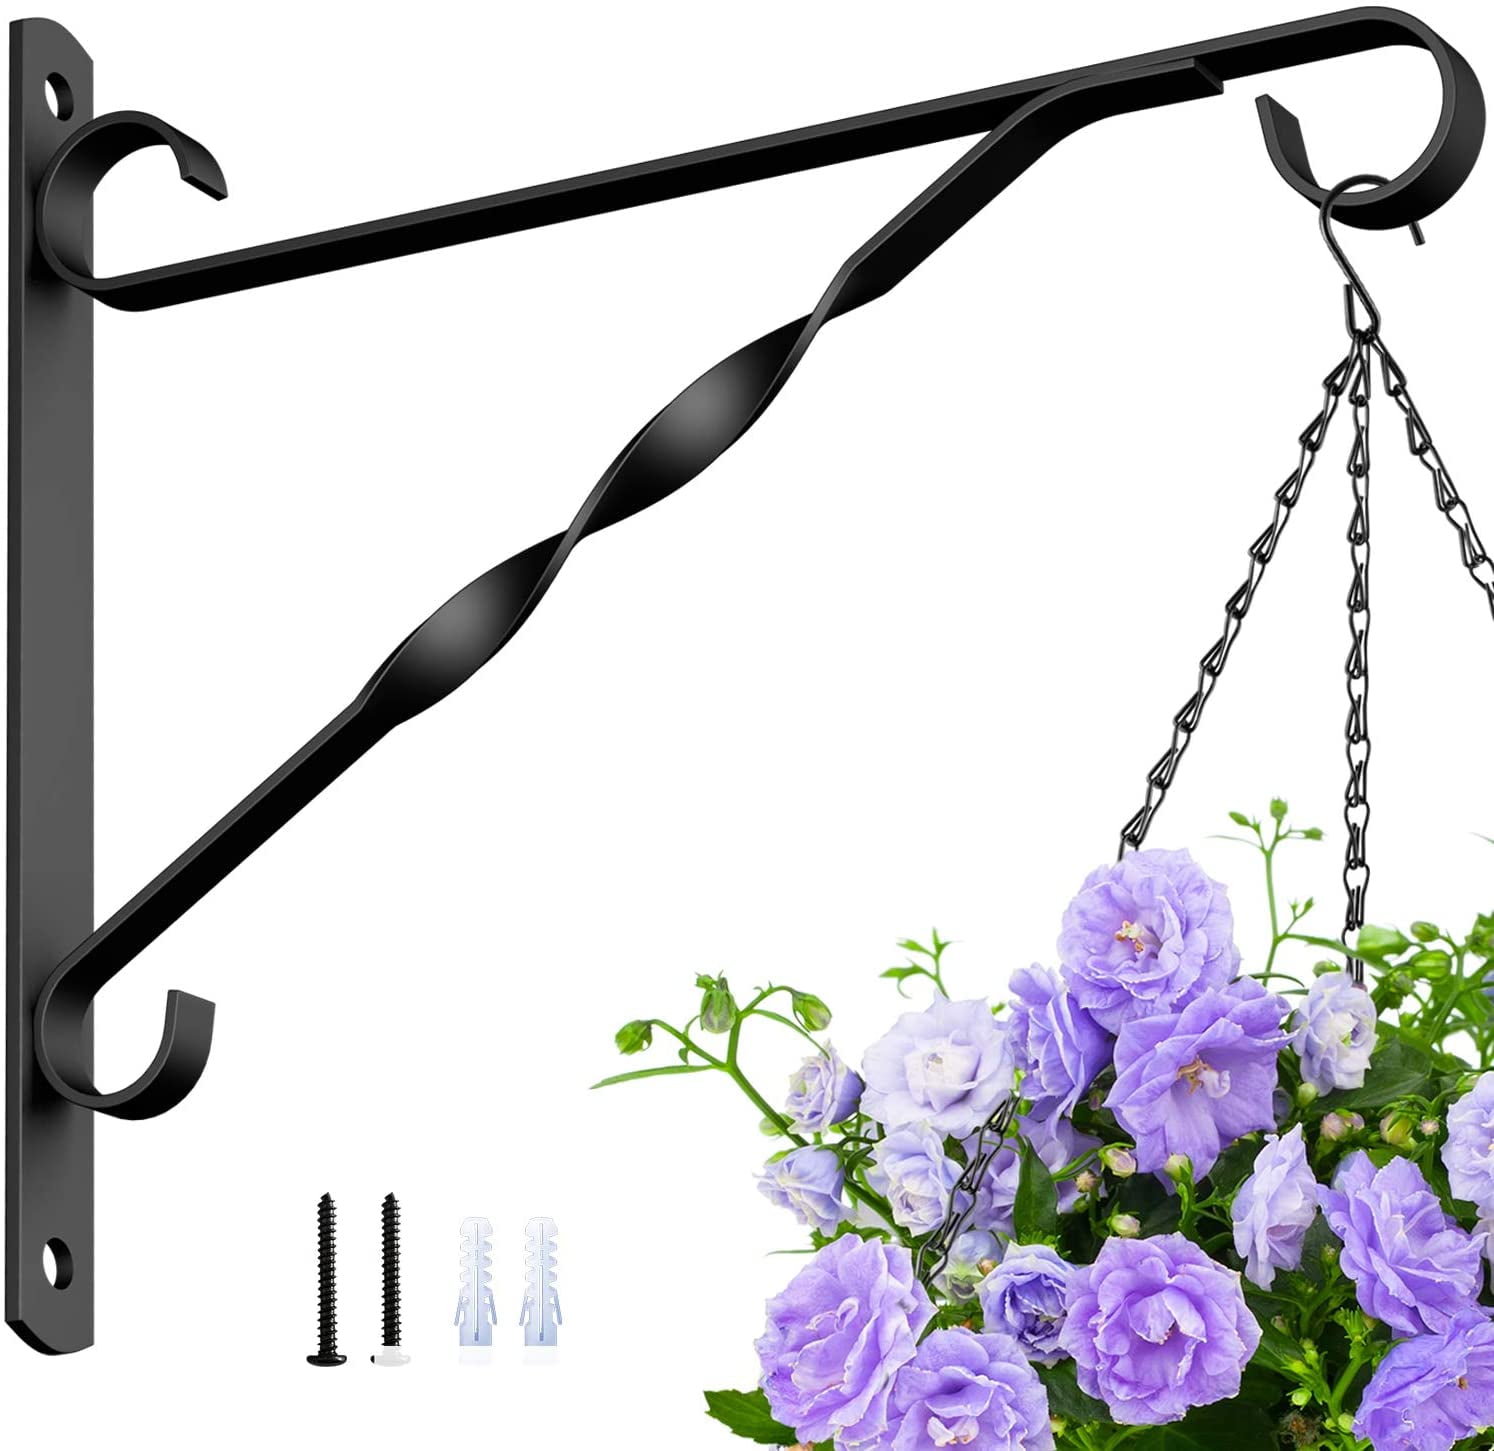 3x Hanging basket bracket fits over fence 